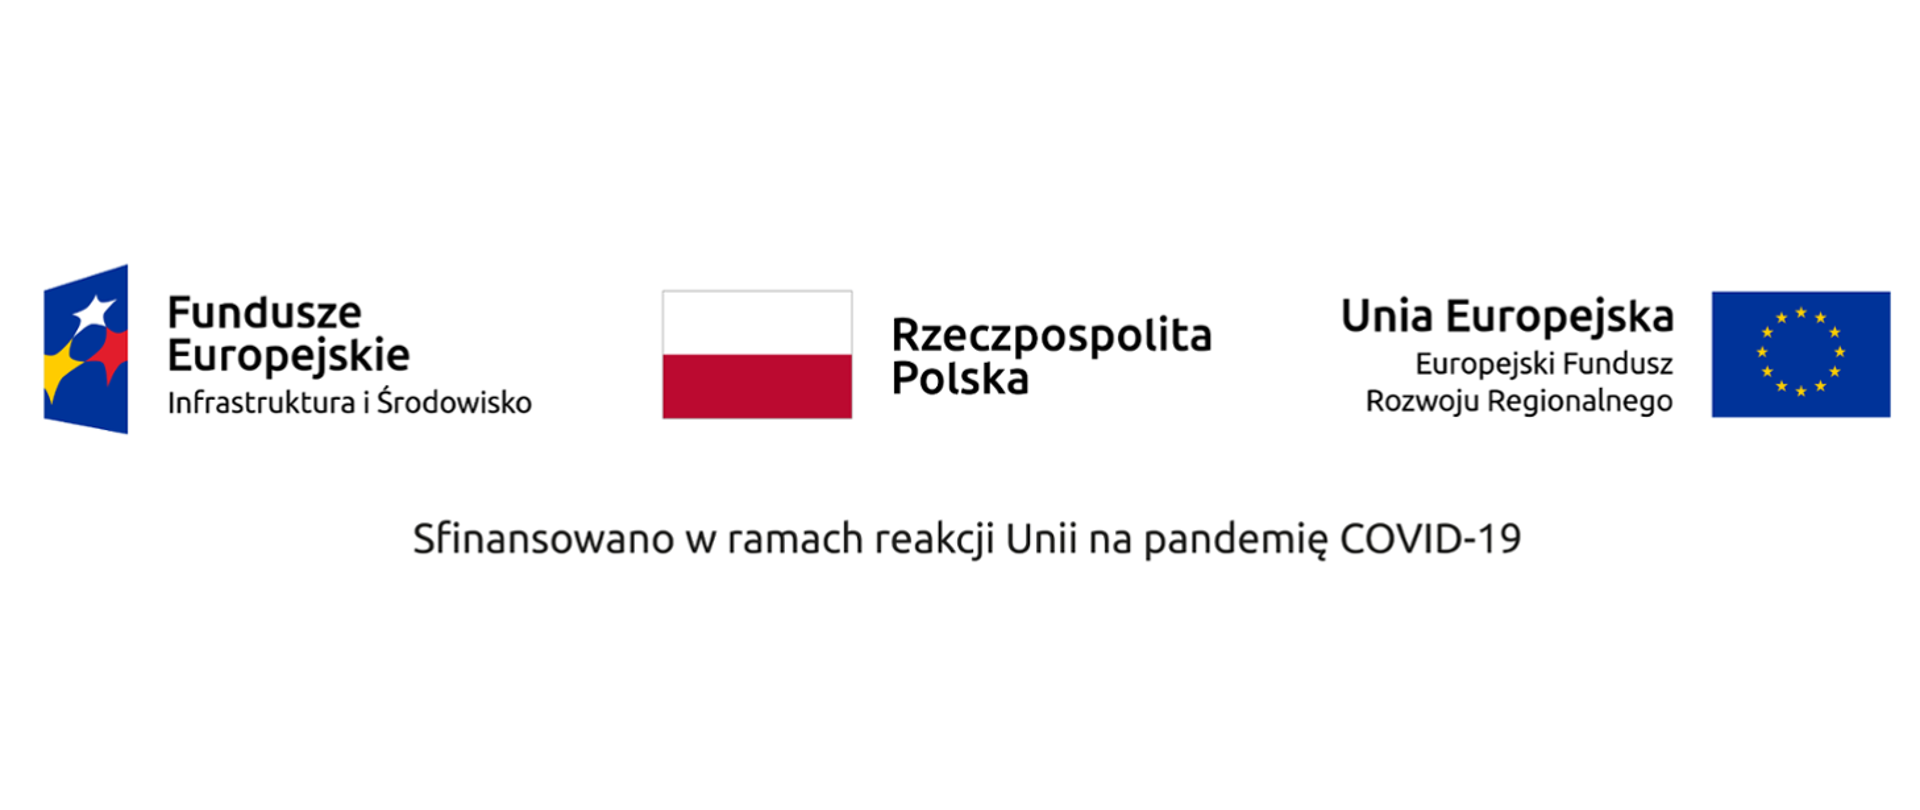 Zdjęcie przedstawia flagi Polski, Unii Europejskiej oraz tekst Sfinansowano w ramach reakcji Unii na pandemię COVID-19.